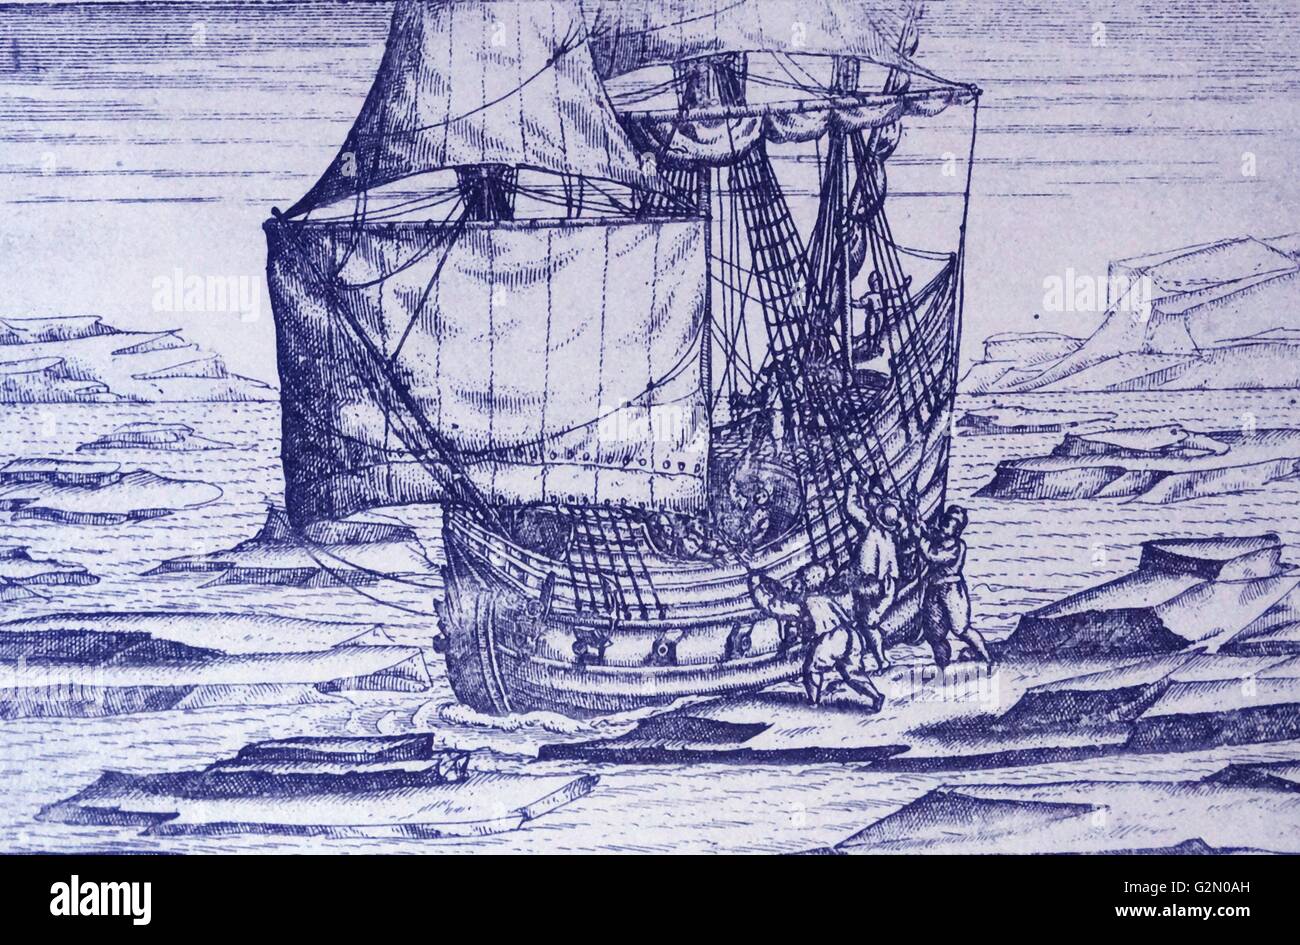 Van di barentz viaggi da Gerrit de veer 1598 ghiaccio in chiusura sulla nave. Willem Barentsz (William Barents Barentz o) (c. 1550 - 20 giugno 1597) navigatore olandese, cartografo, e Arctic explorer. Egli è andato in tre spedizioni all'estremo nord nella ricerca di un passaggio a nordest. Durante la sua terza spedizione l equipaggio fu arenati su Nova Zembla per quasi un anno. Barentsz morì sul viaggio di ritorno nel 1597. Nel XIX secolo il Mare di Barents è stato chiamato dopo di lui. Foto Stock